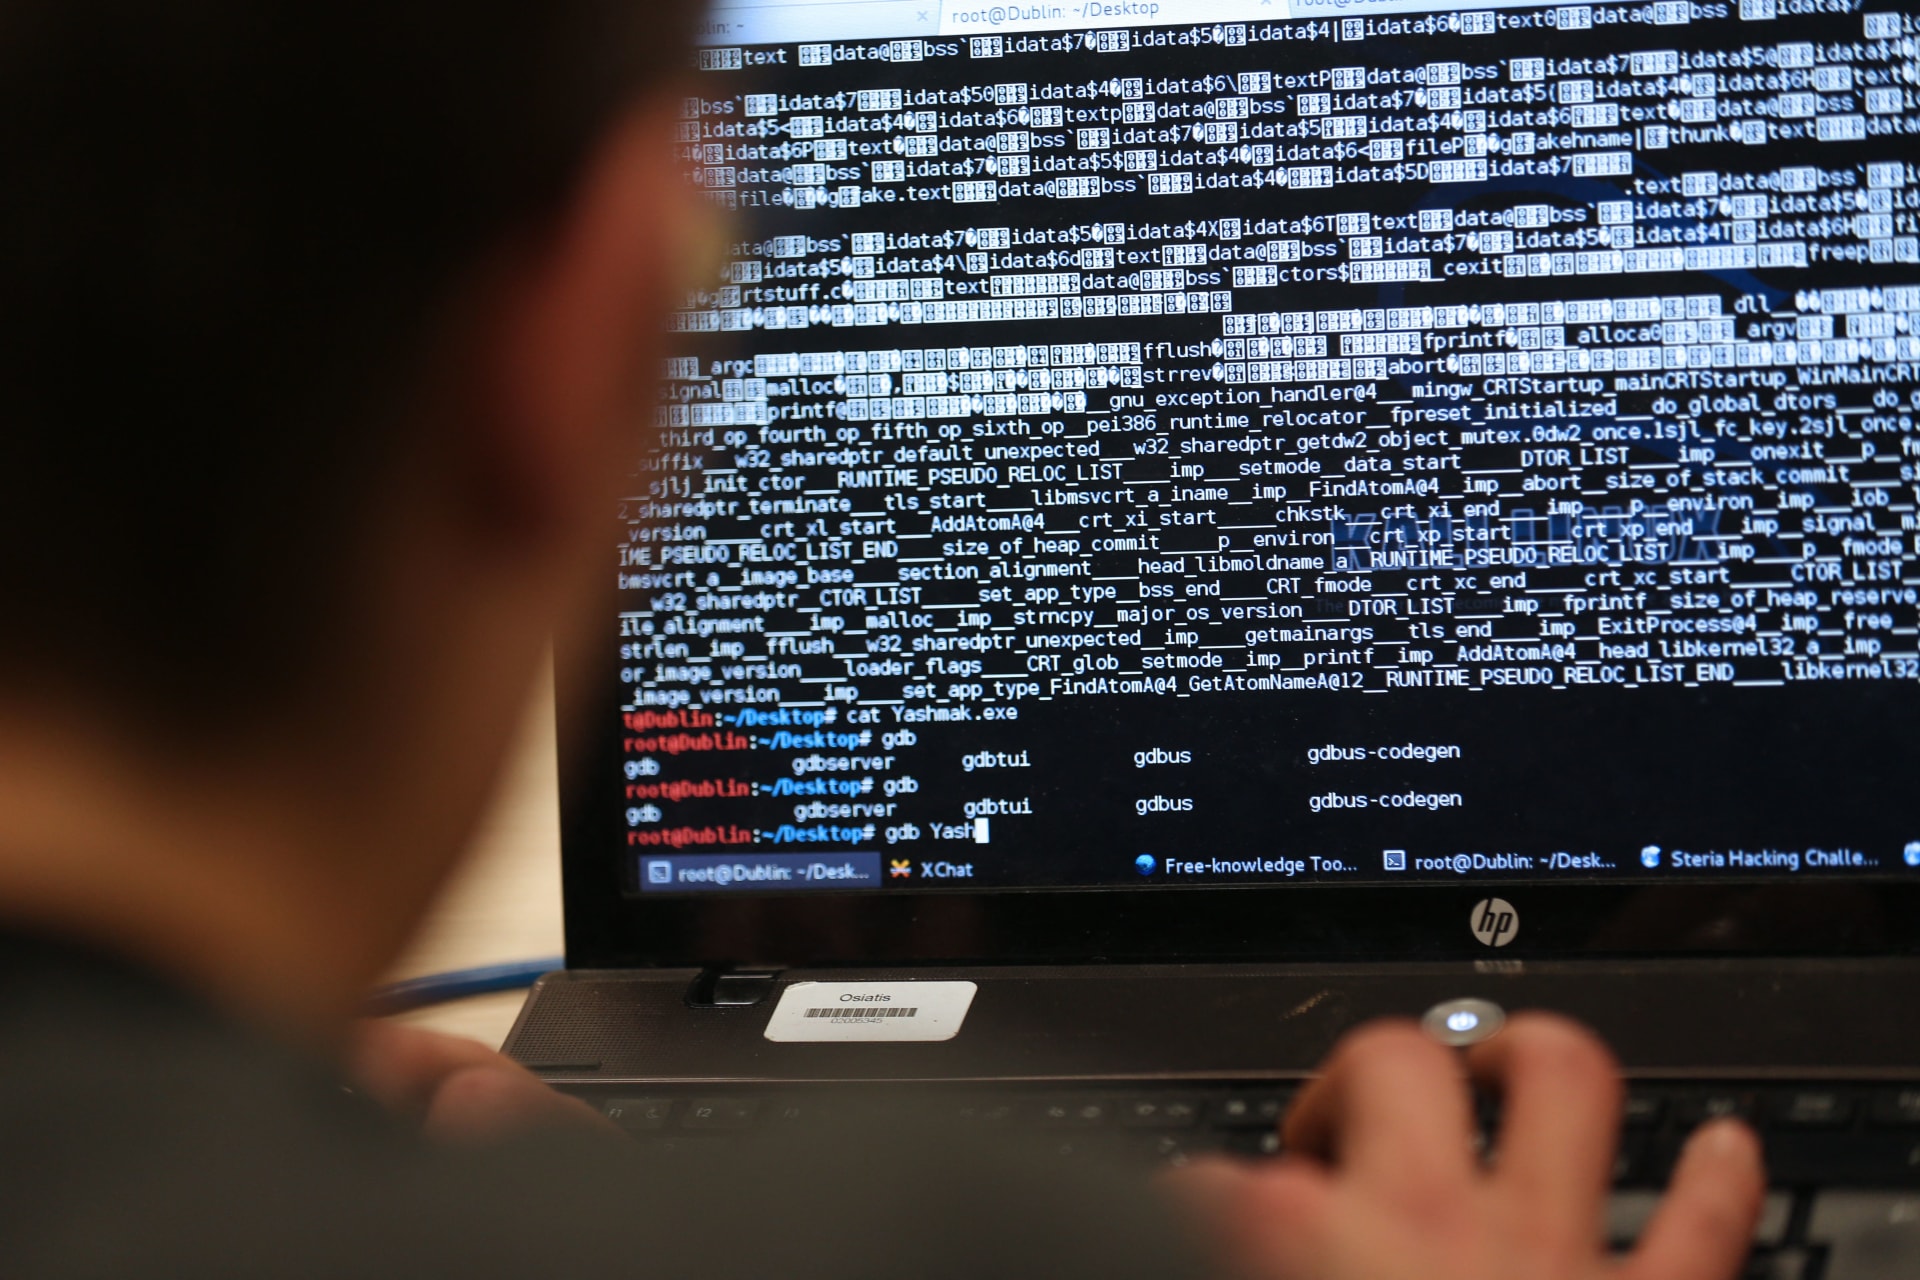 الإمارات تعلن التصدي لهجمات إلكترونية نفذتها "تنظيمات إرهابية"